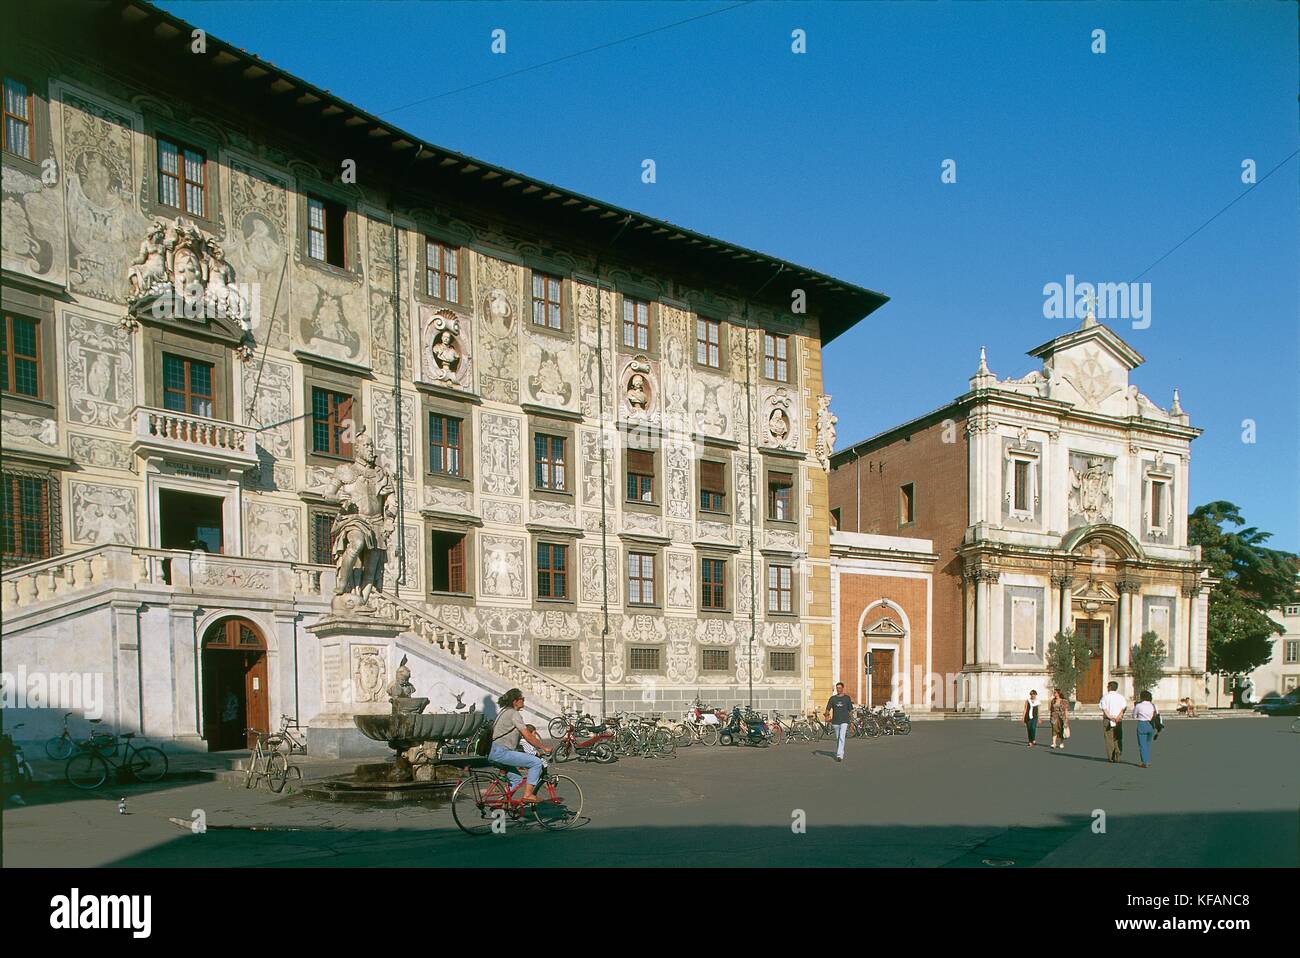 L'Italie, la région Toscane, Pise, place des chevaliers, chevaliers palace Banque D'Images